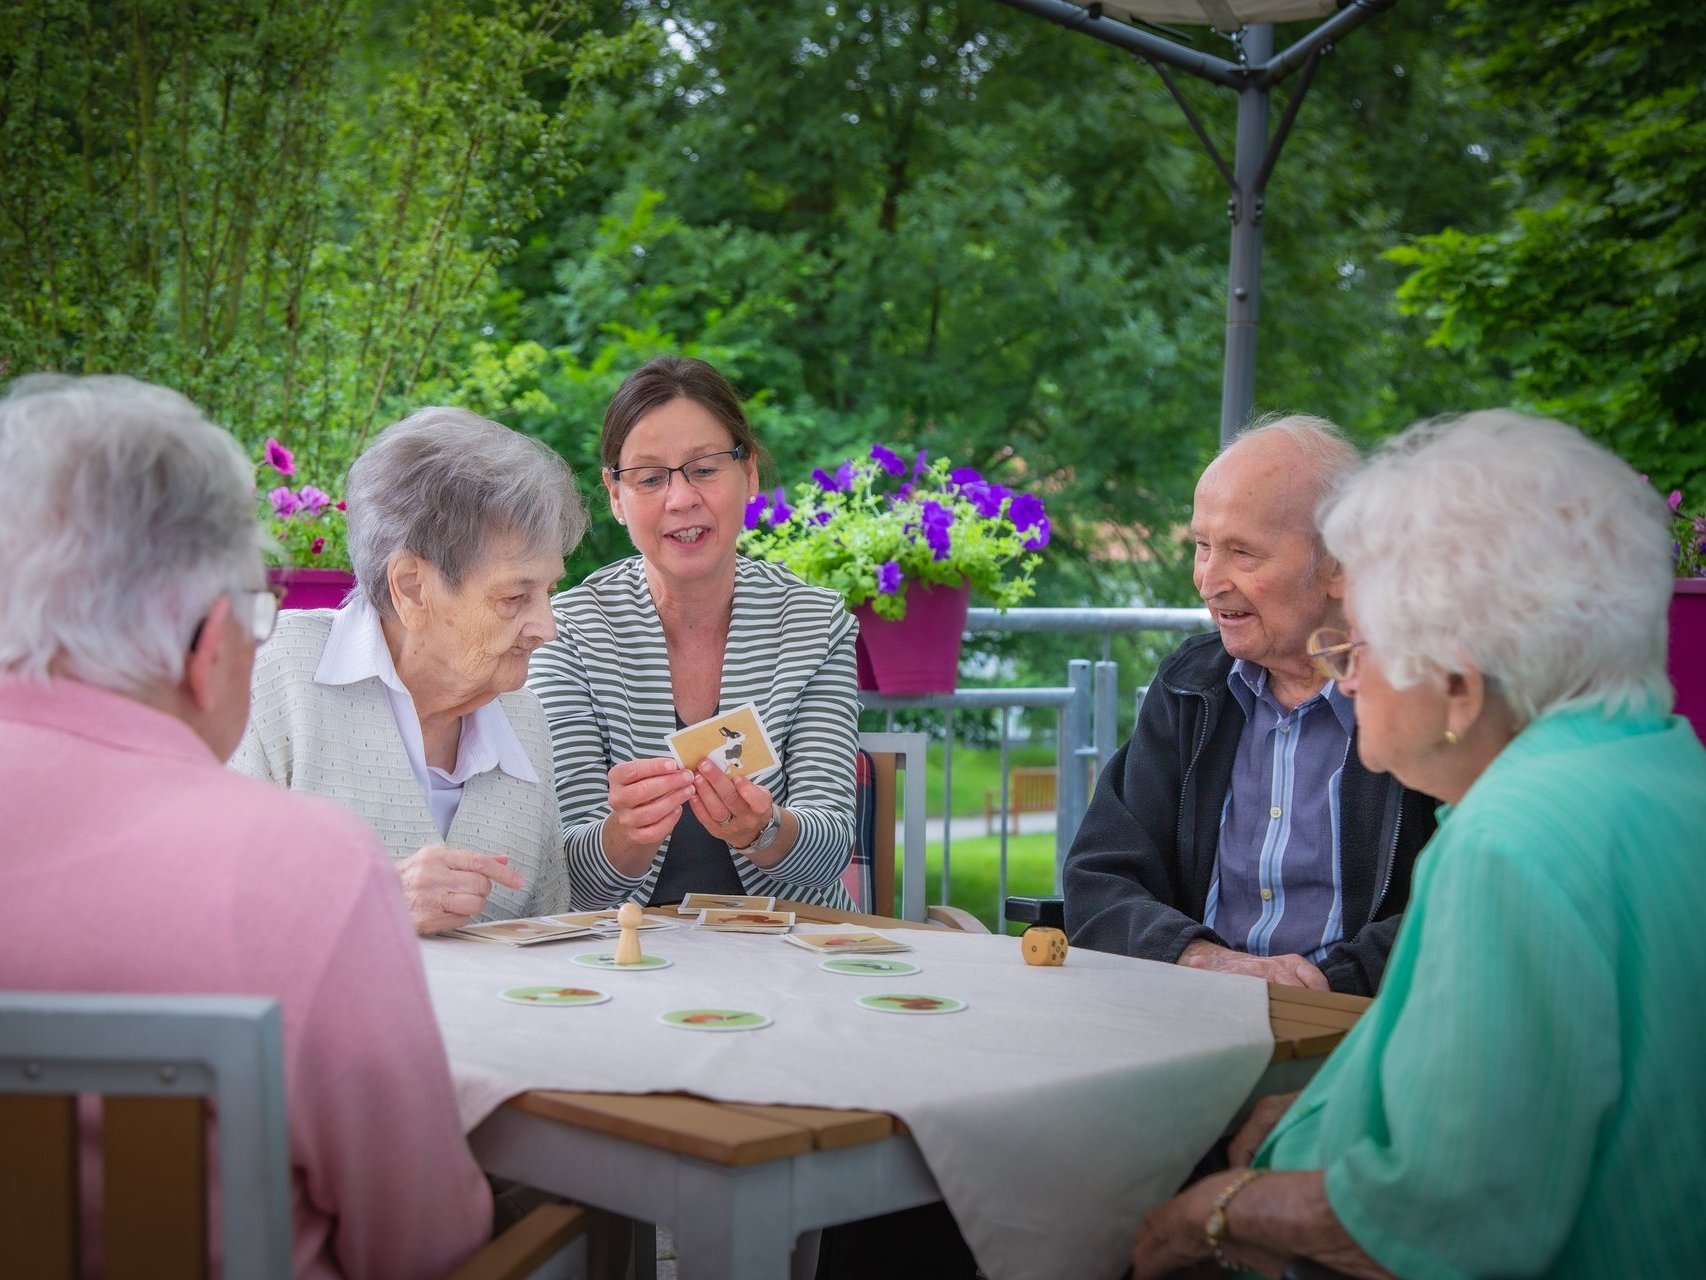 Vier Bewohner spielen mit einer Mitarbeiterin ein Brettspiel auf einer Terasse im Garten